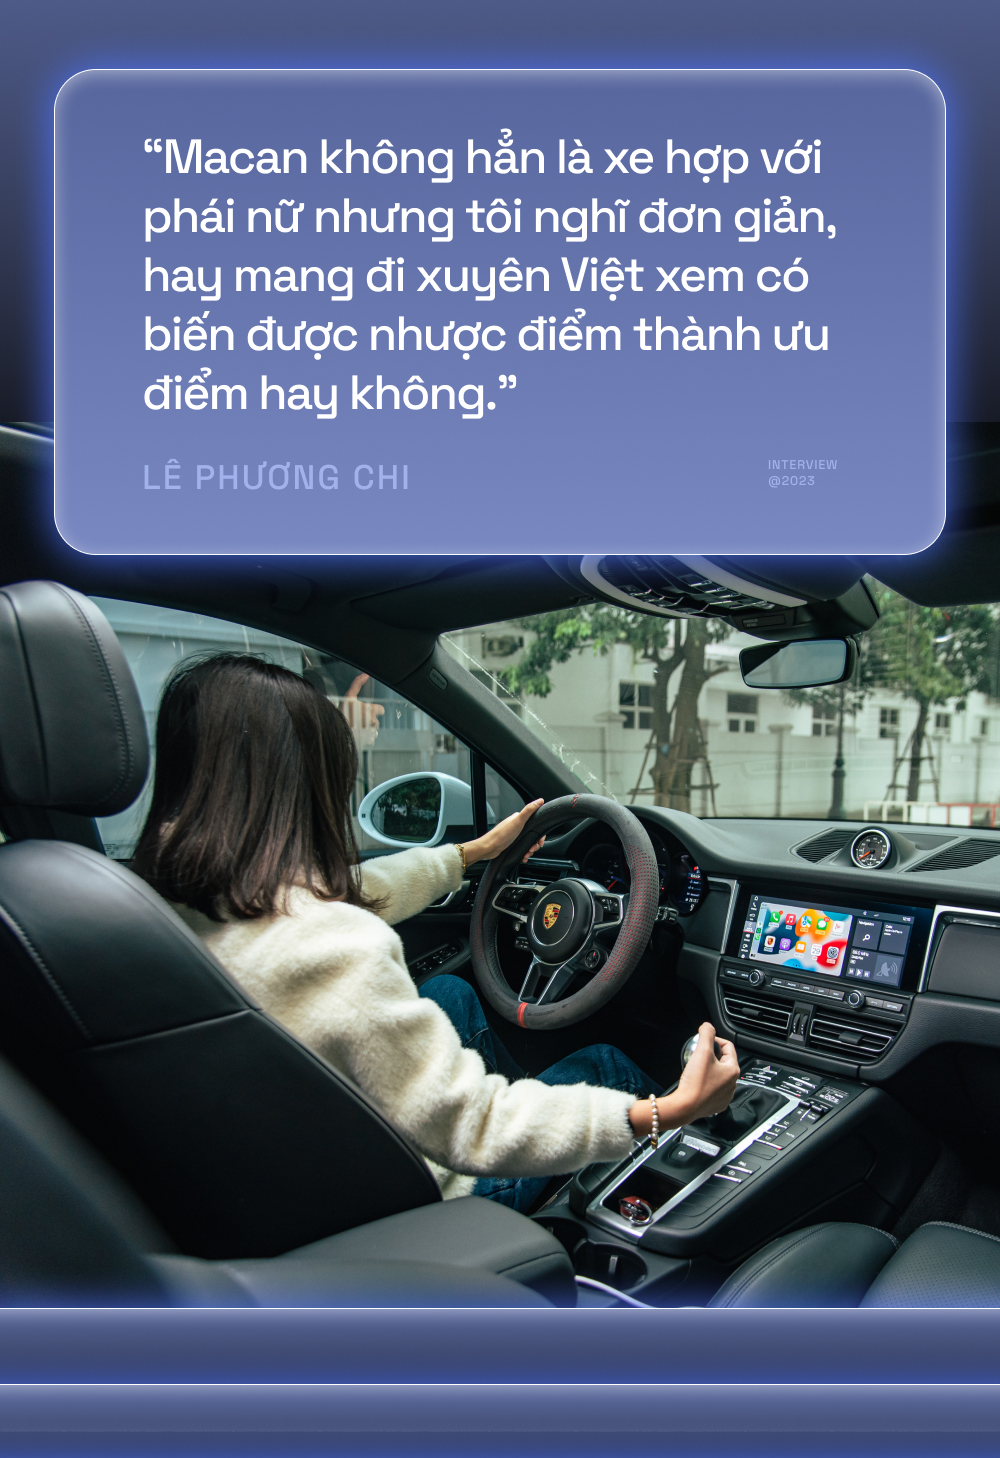 Gia đình 9X Hà Thành lái Macan xuyên Việt: ‘Mua Porsche mà chỉ loanh quanh Hà Nội thì rất chán’ - Ảnh 3.